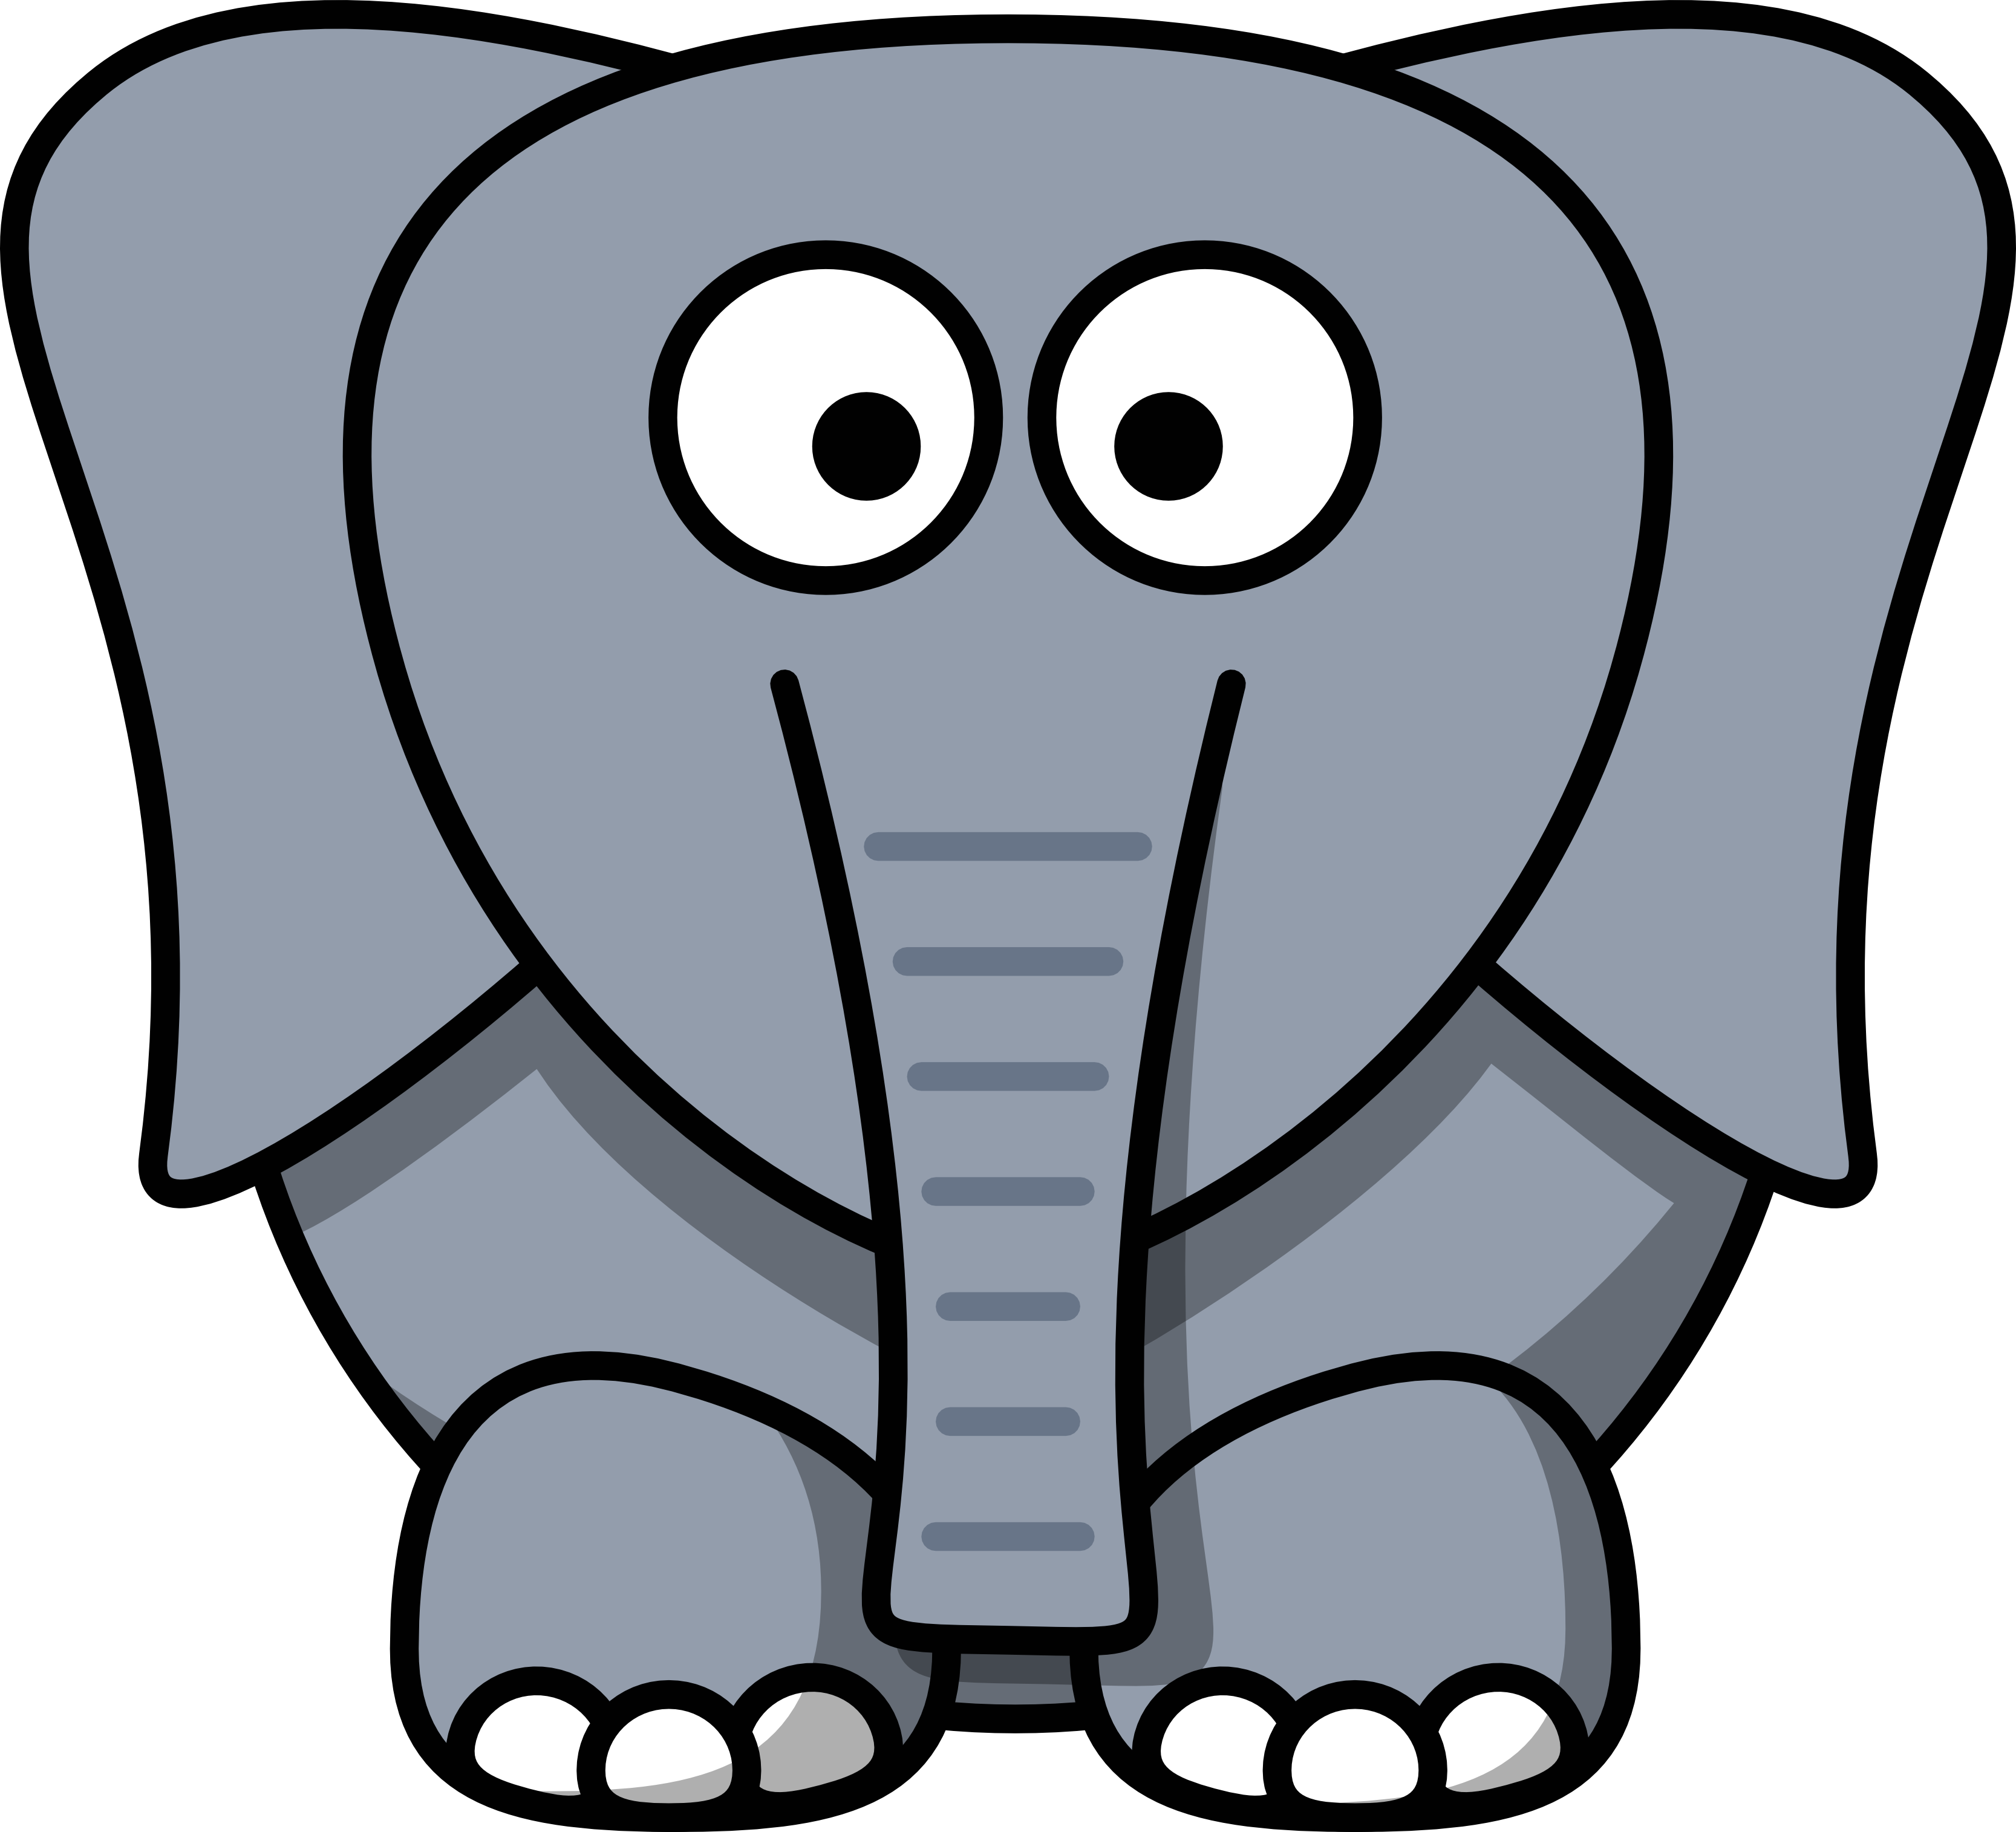 elephant images clip art